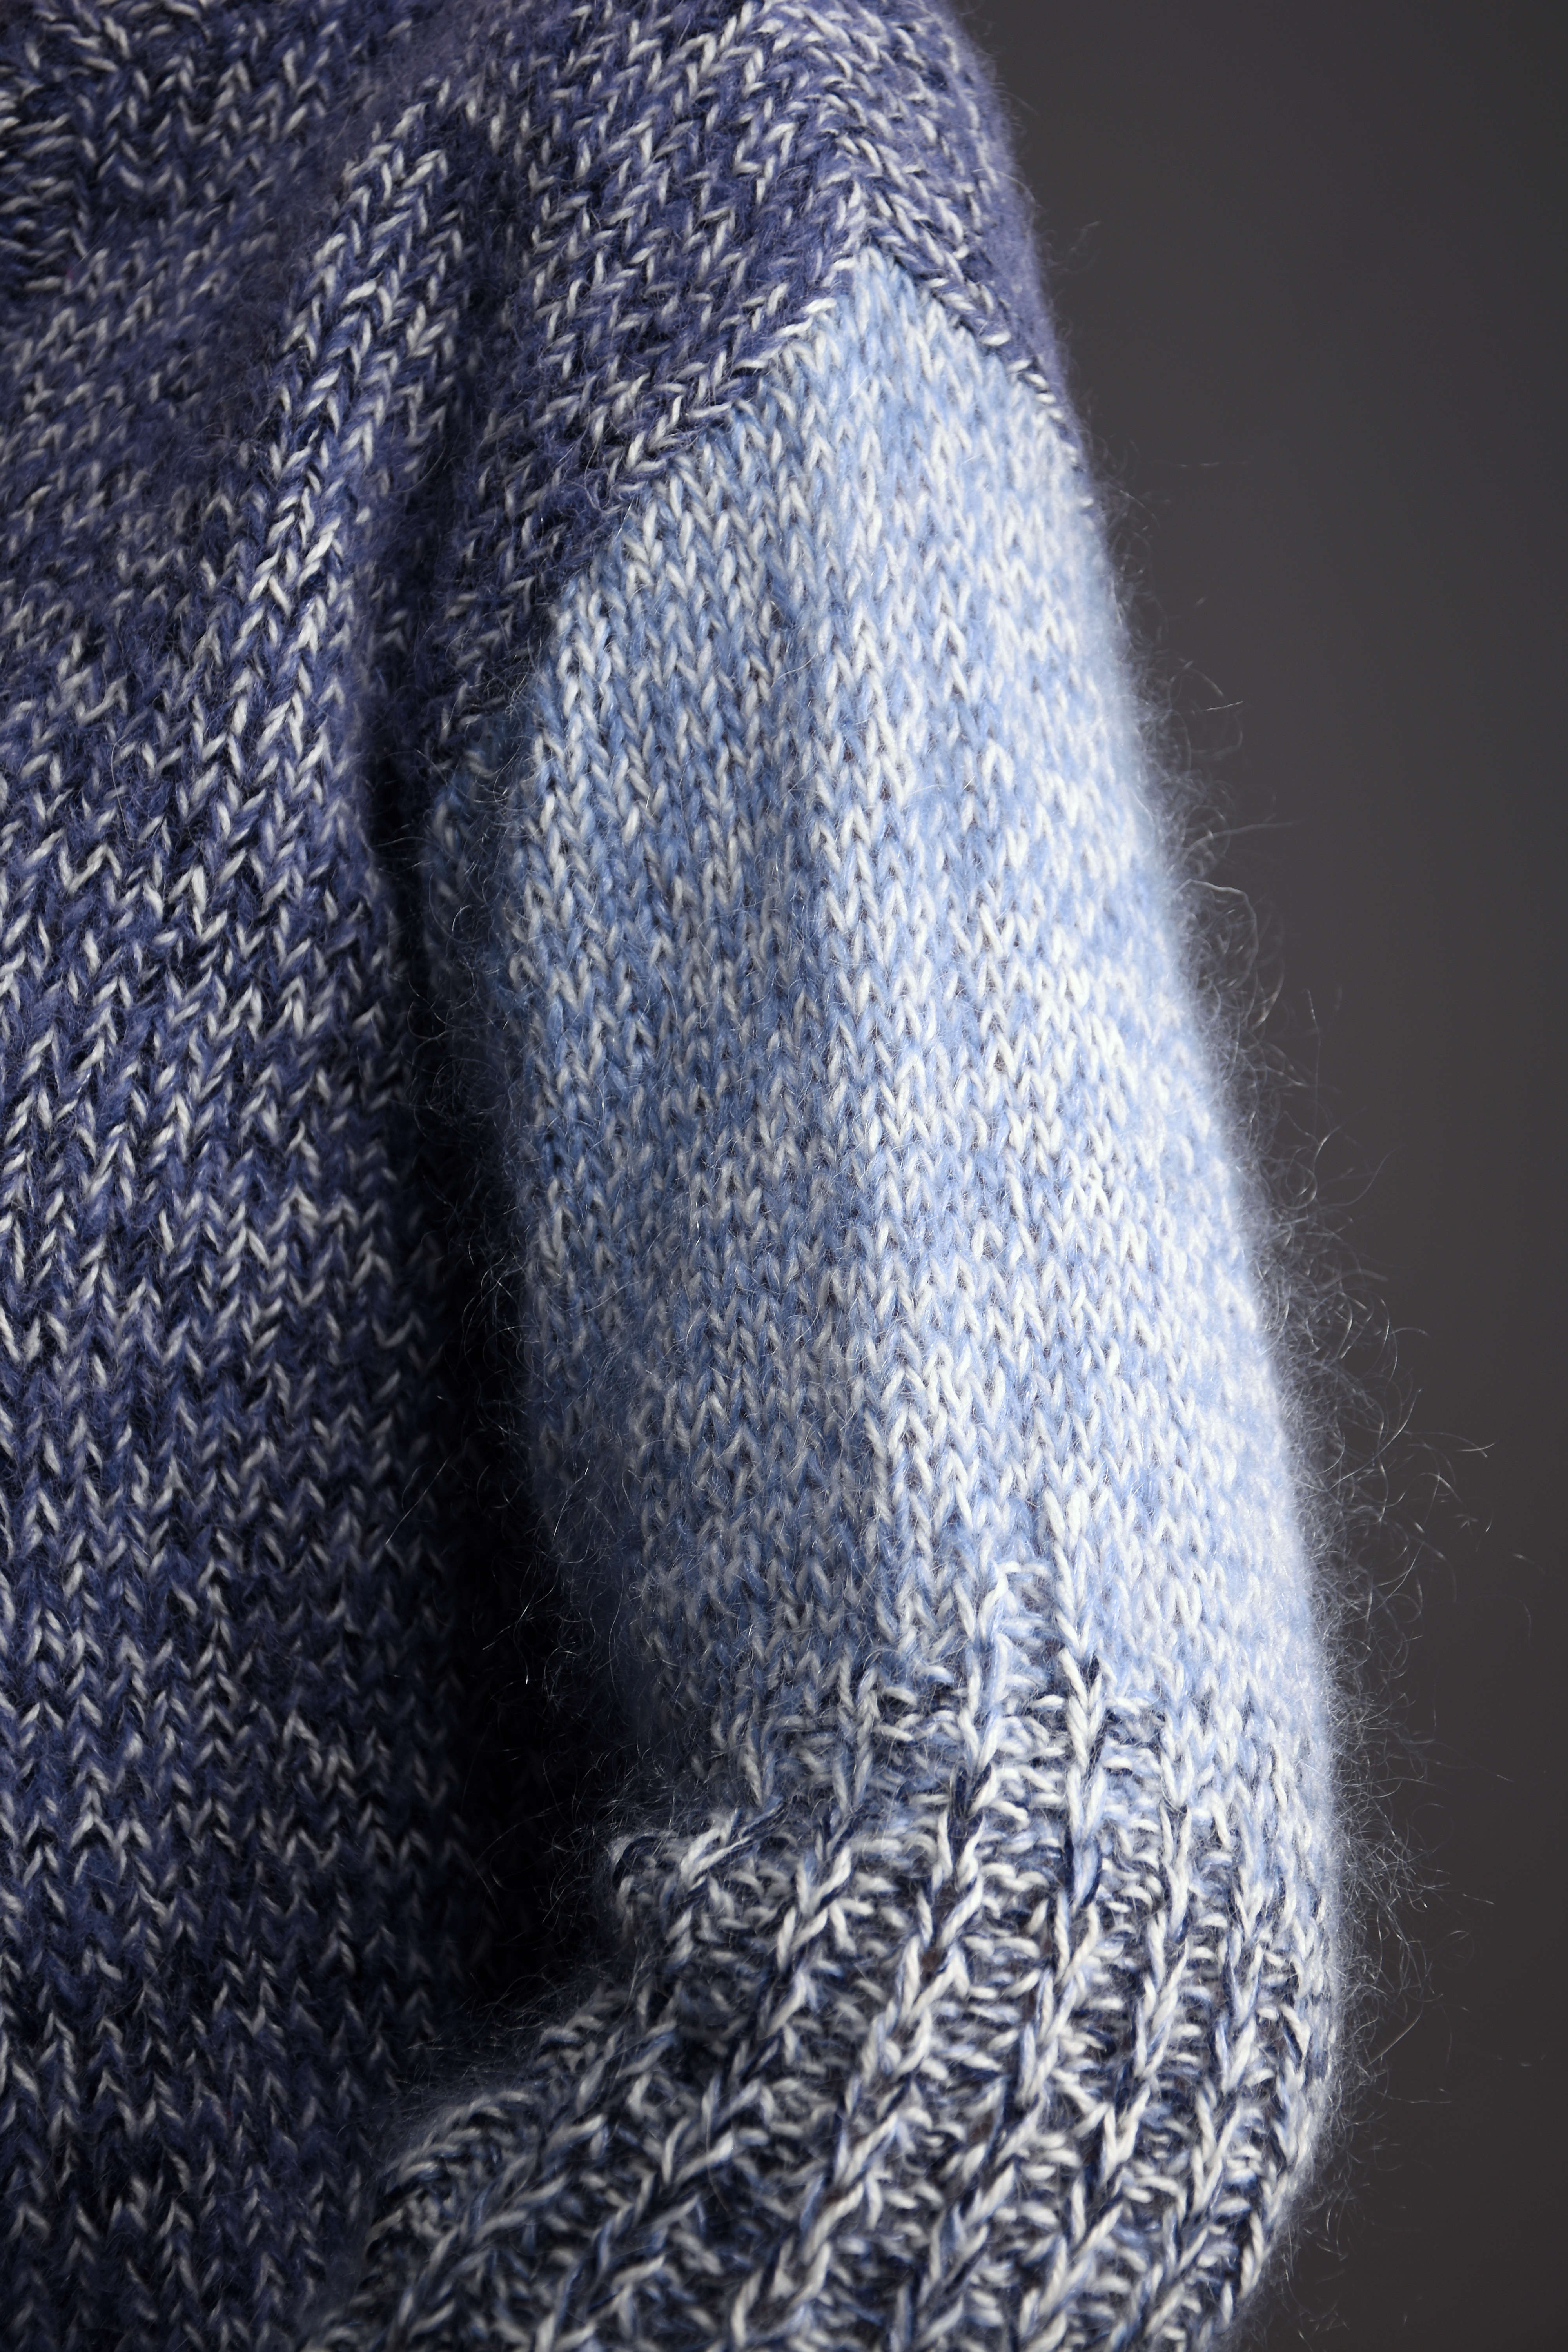 Sweter damski ZIMA, zrobiony ręcznie zrobiony na drutach, melanż granatu, bieli i błękitu.Ciepły sweter z alpaki